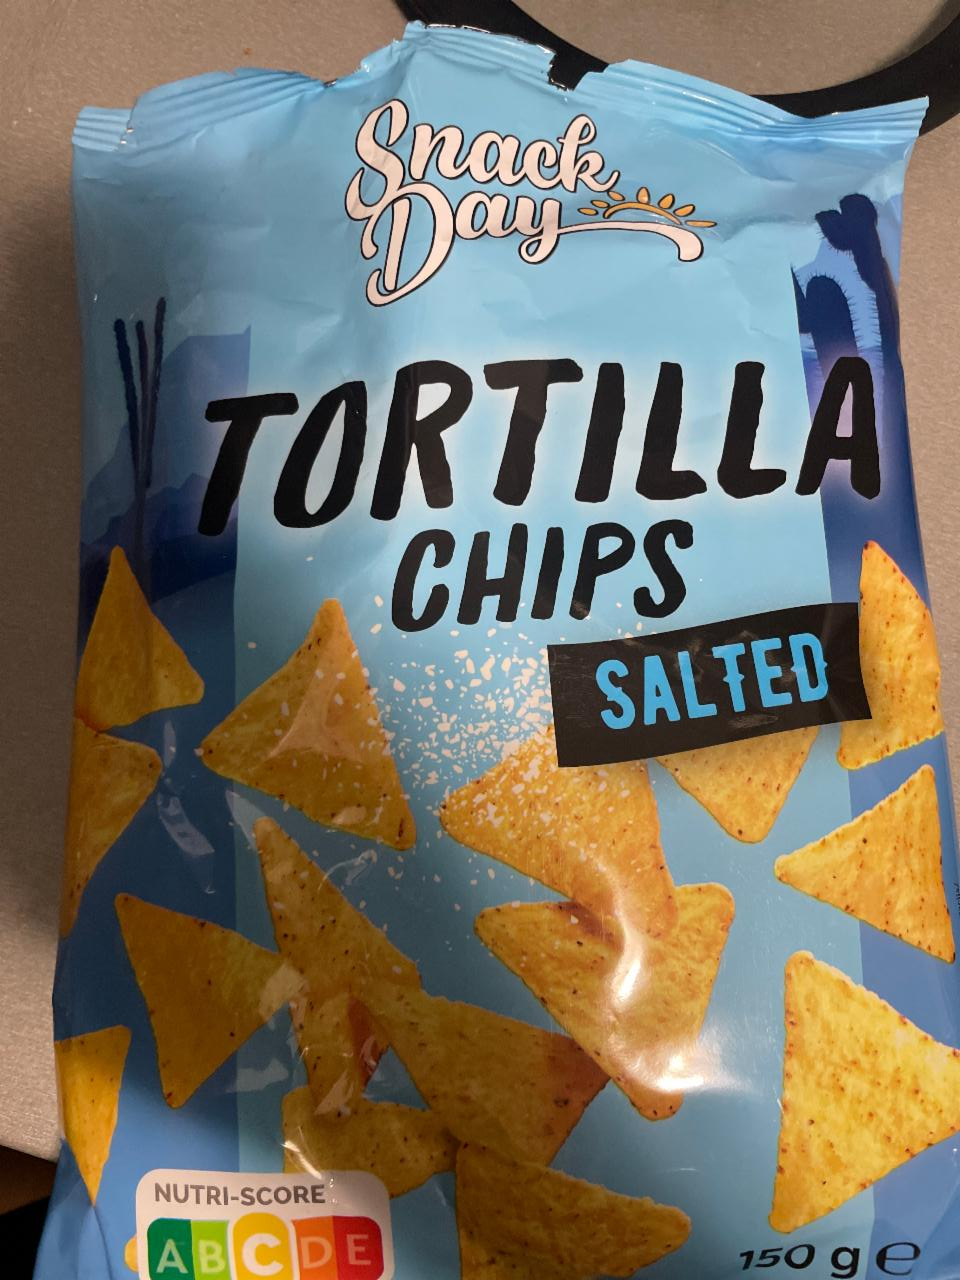 Tortilla chips salted Snack Day - kalorie, kJ a nutriční hodnoty